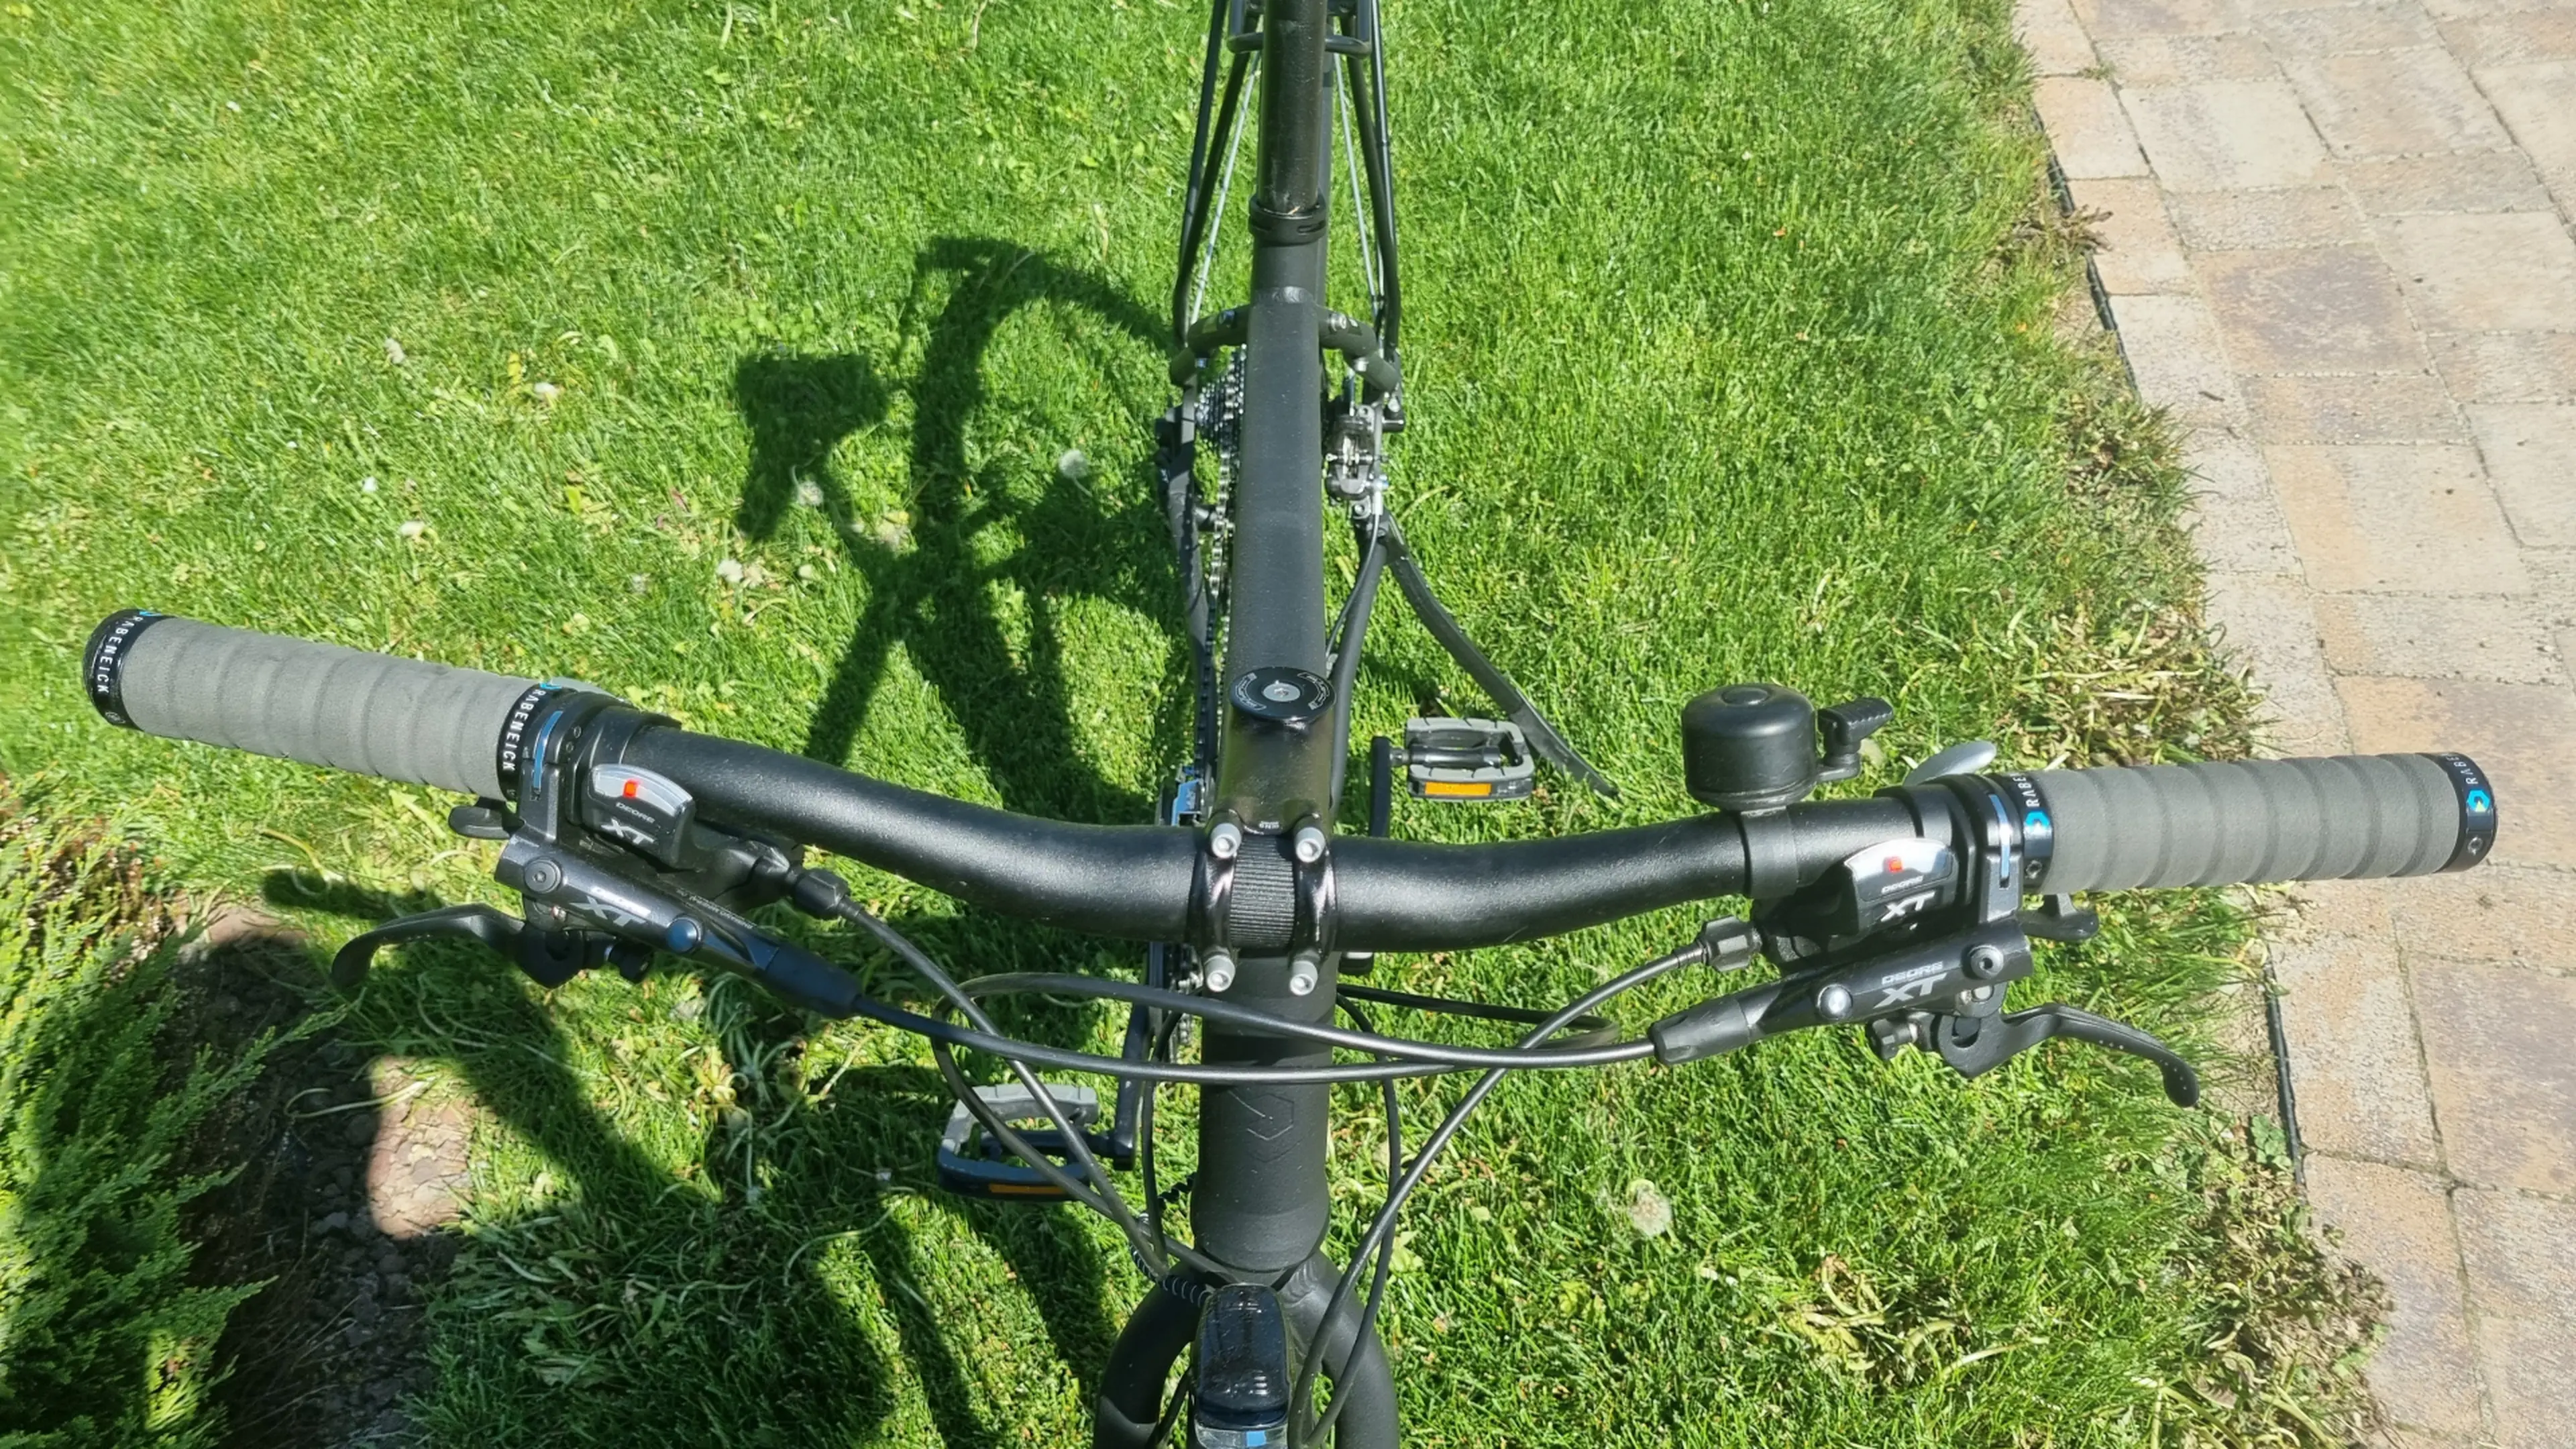 5. Bicicleta de ture/ oras Rabeneick TS8, Shimano XT, marime 52cm